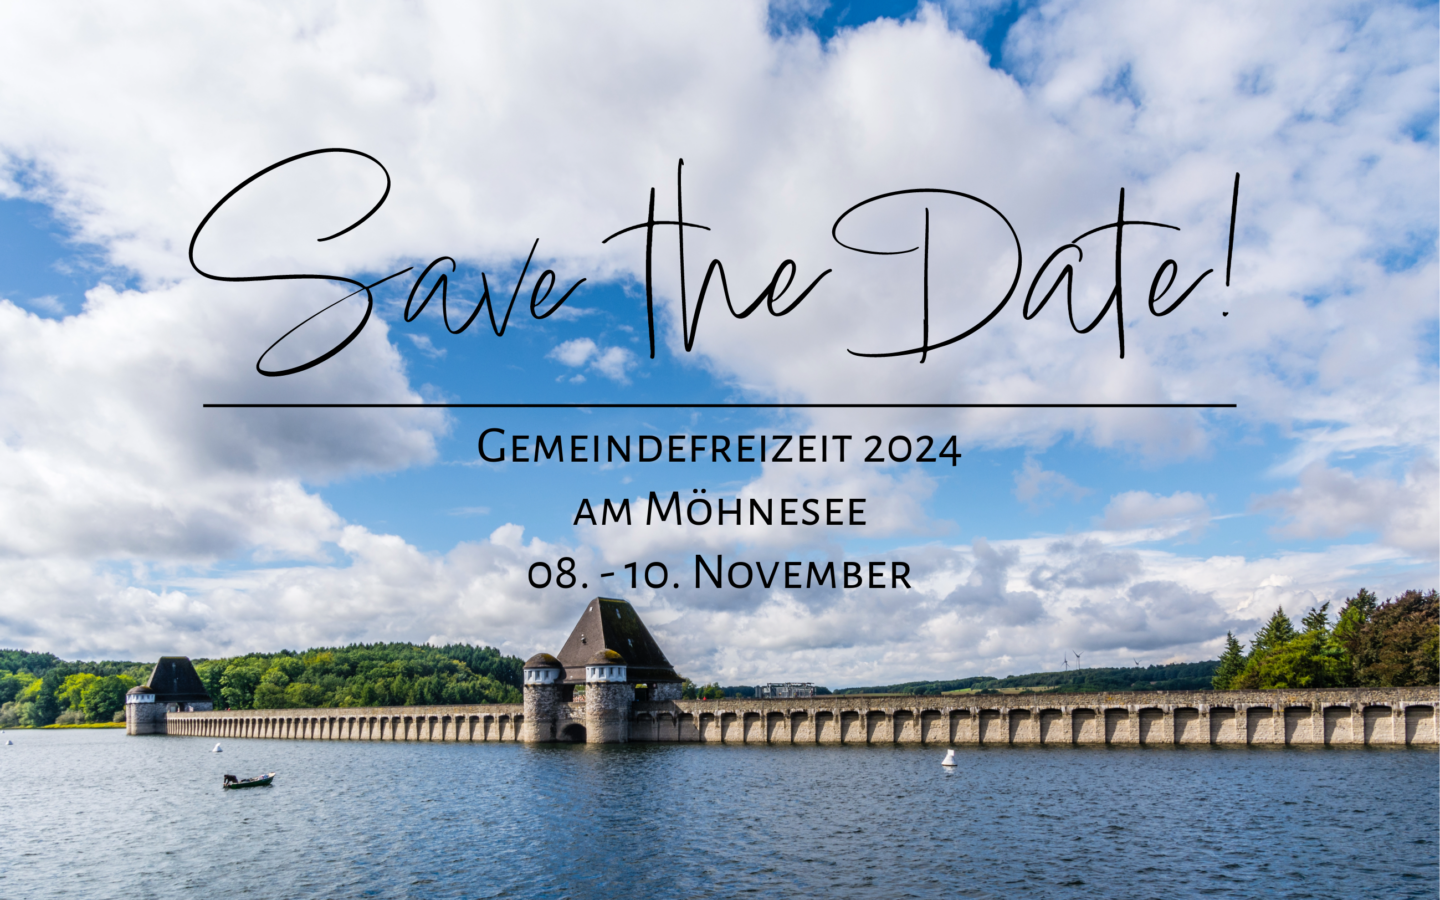 Gemeindefreizeit 08.-10.11.2024: Save the date!